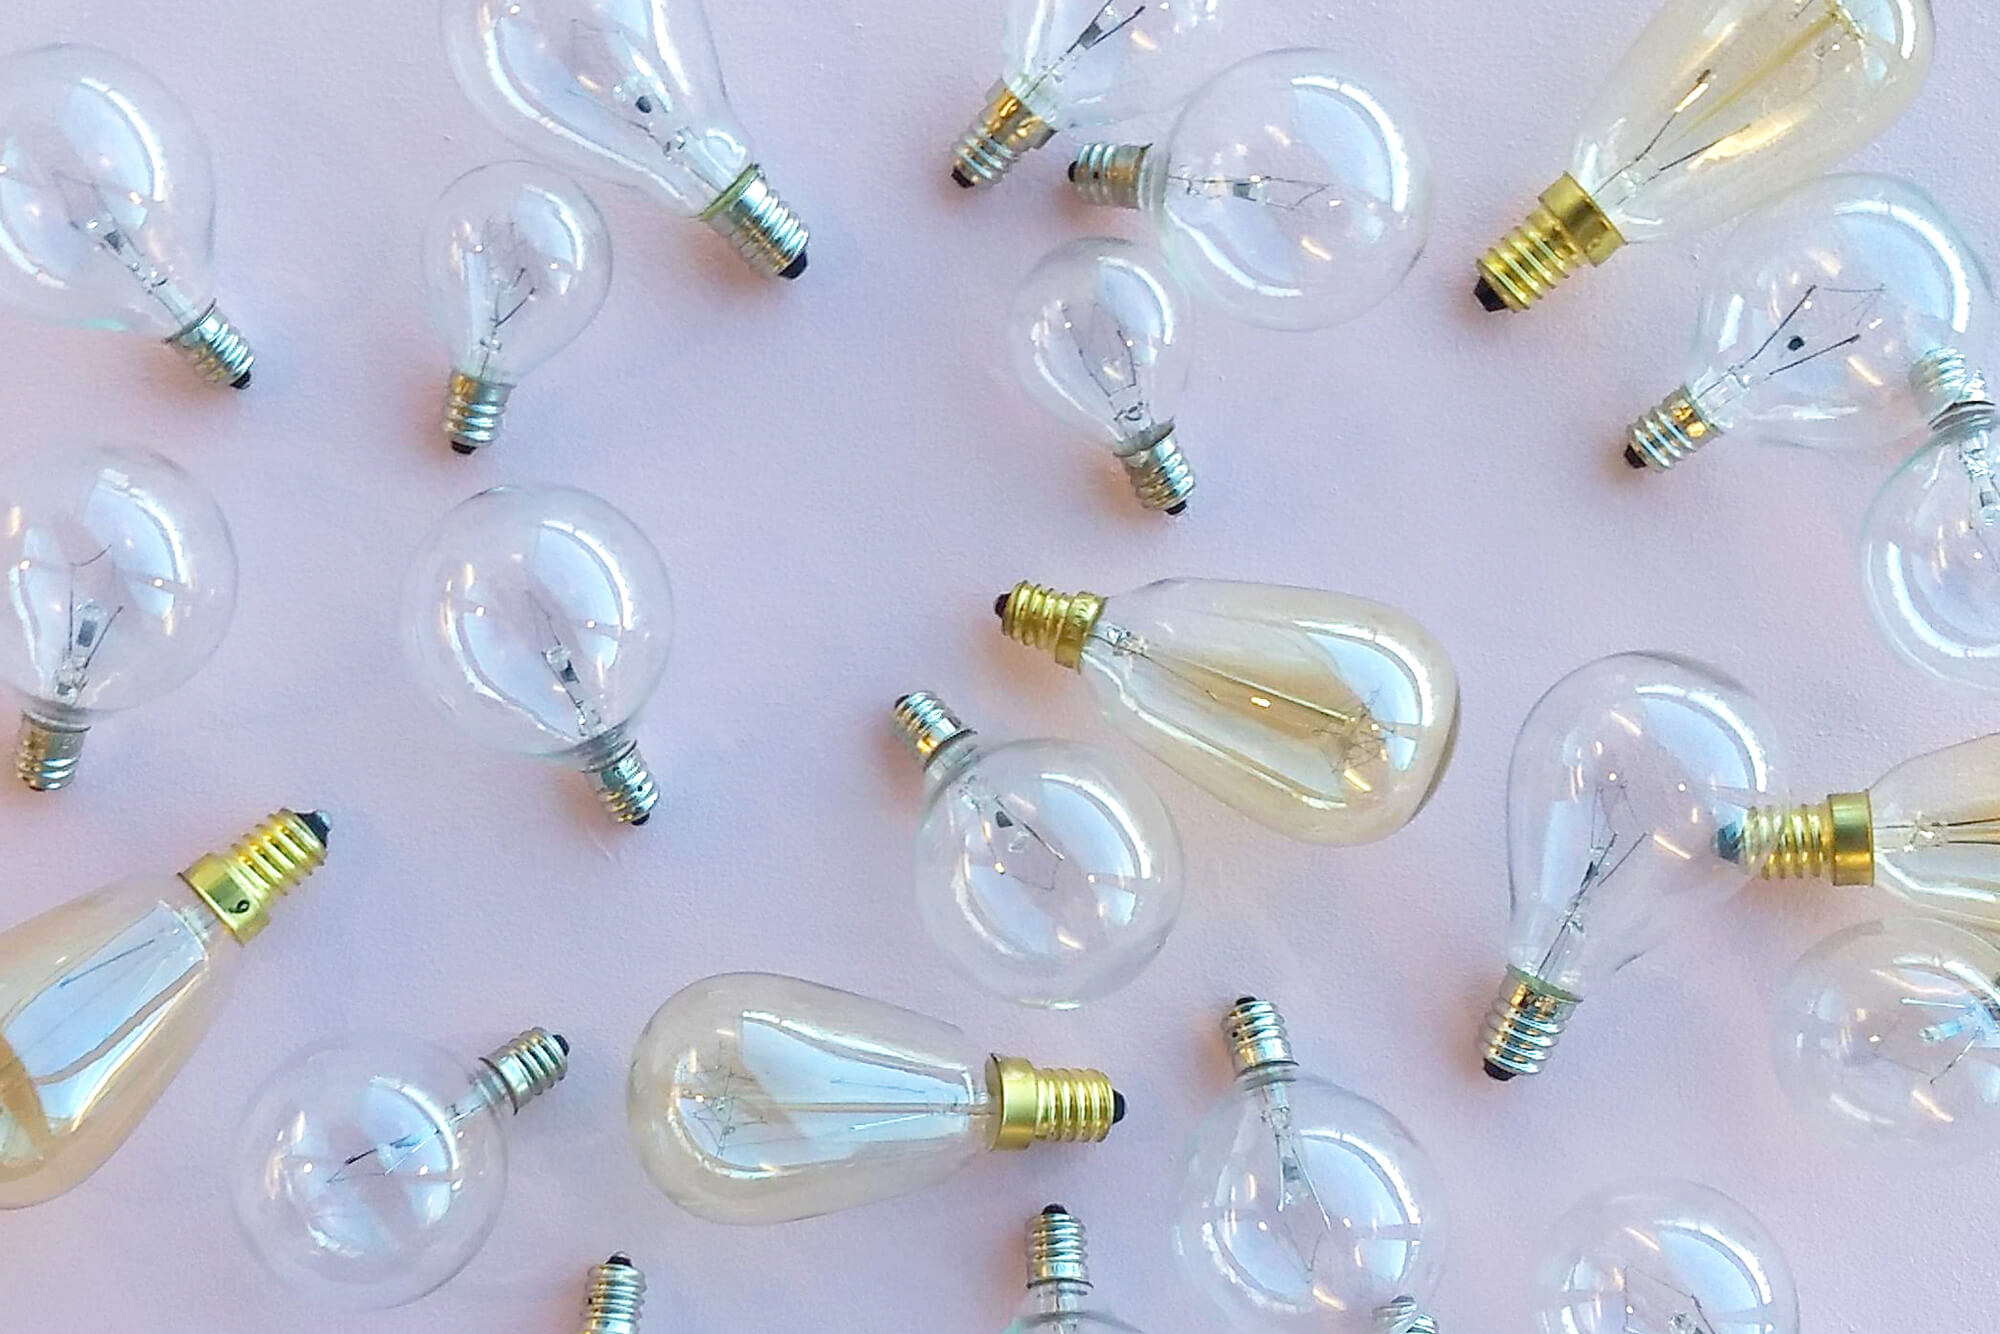 Plain assorted light bulbs